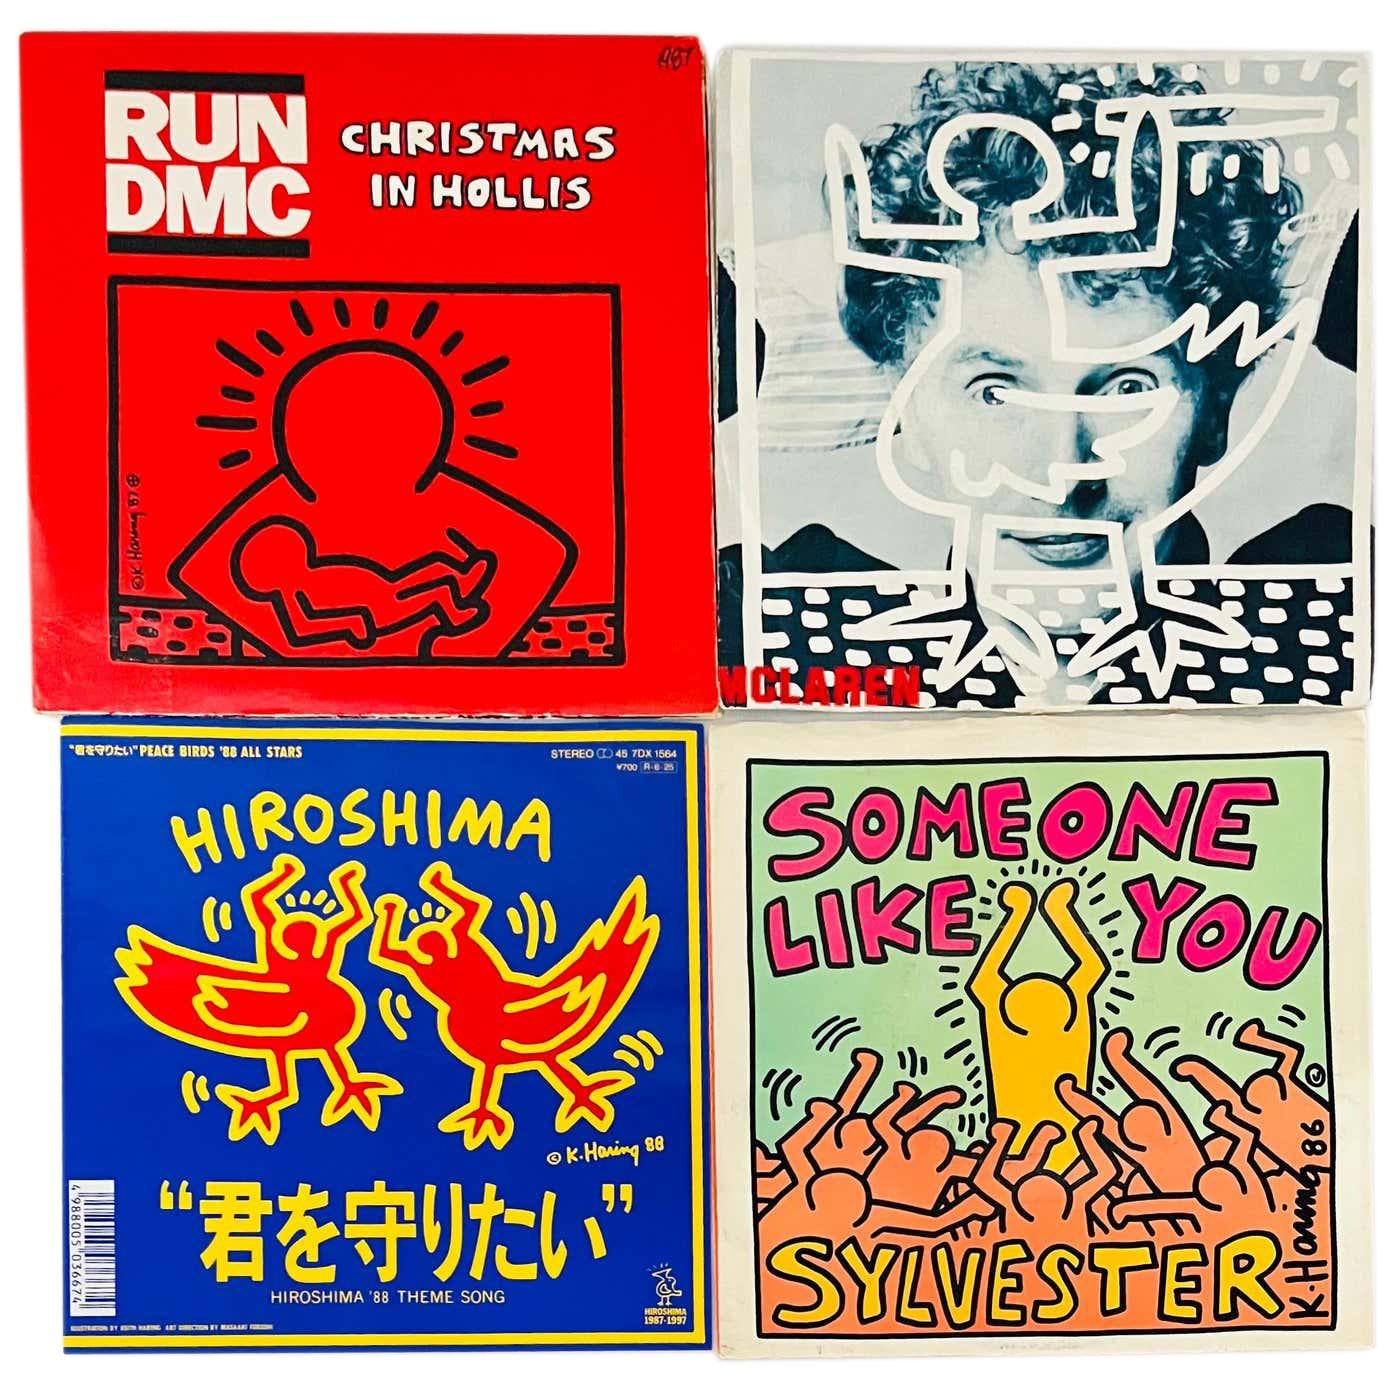 Rare Vintage 1980 Keith Haring Record Cover Art : (Set of 4 : 1983-1987) :

Quatre albums individuels de 7 pouces - tous illustrés par Haring au cours de sa vie - faisant de l'art mural Keith Haring des années 1980 une œuvre d'art remarquable, dans